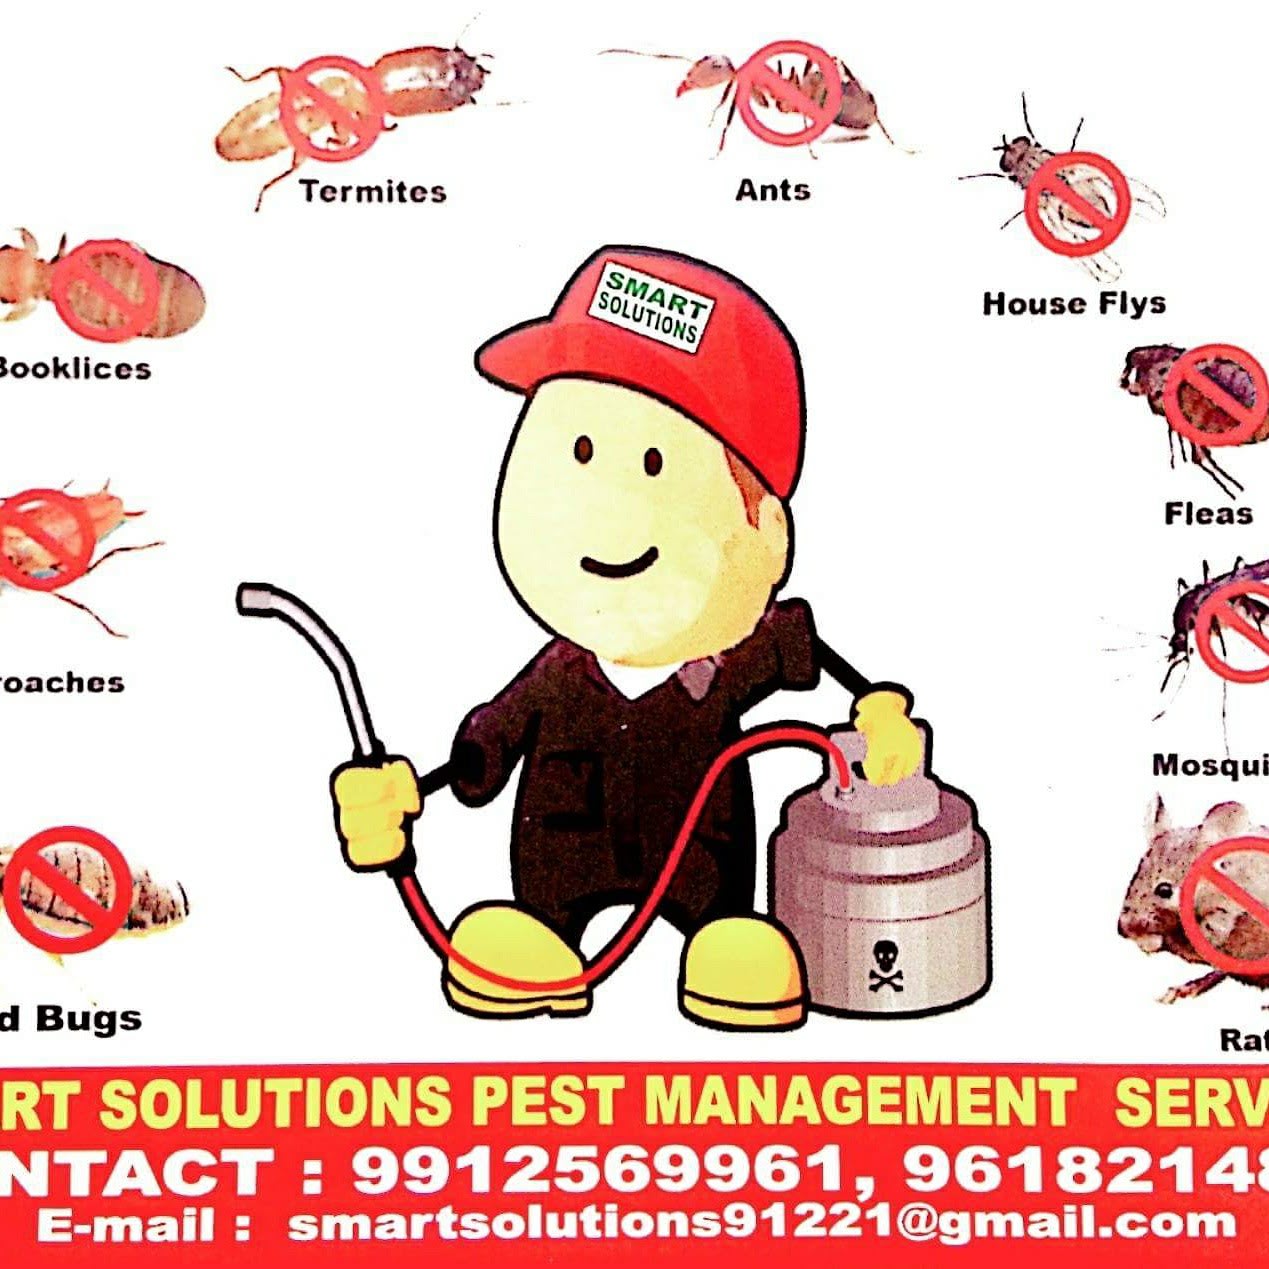 Smart Solutions Pest Management Services